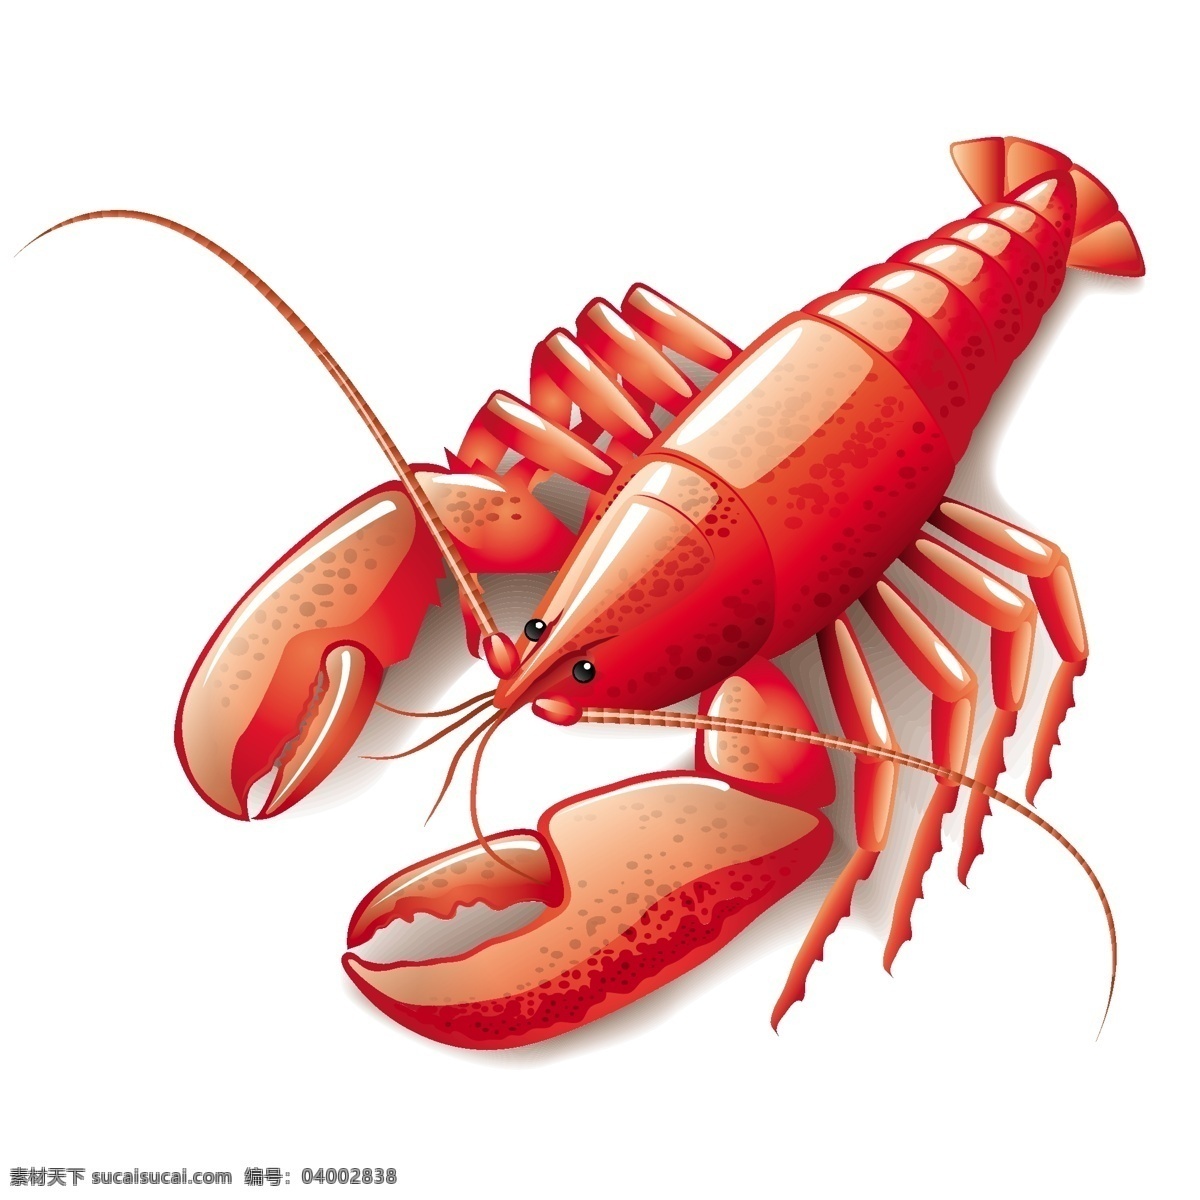 卡通龙虾 龙虾素材 龙虾表情 海鲜 海产品 大龙虾 卡通 海底动物 食品蔬菜水果 卡通设计